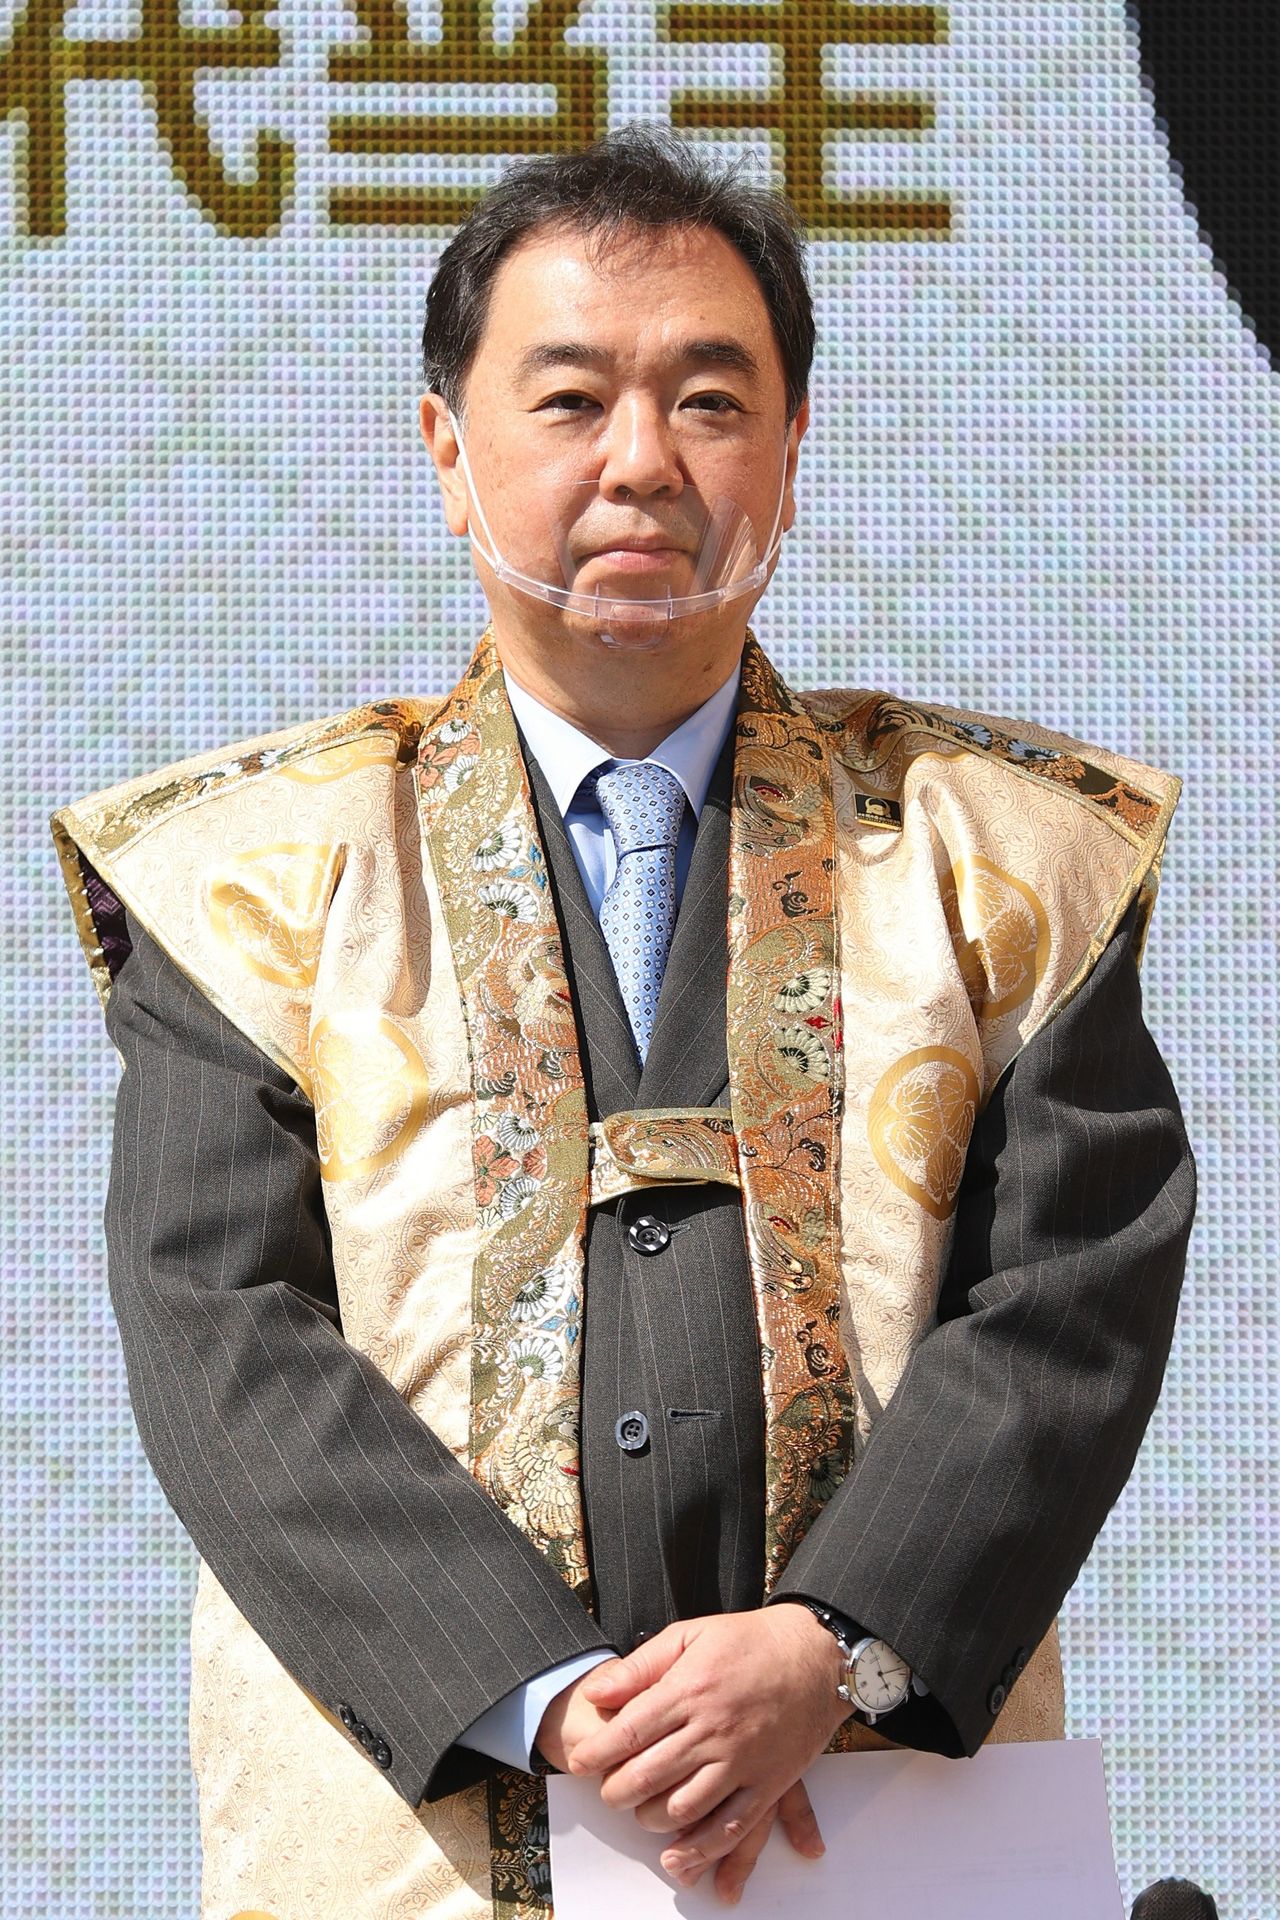 В январе этого года Токугава Иэхиро в возрасте 57 лет стал 19-м главой рода Токугава. Смена главы рода впервые за 60 лет привлекла большое внимание. В настоящее время он работает политическим и экономическим обозревателем, а также является председателем Мемориального фонда Токугава (Jiji Press)